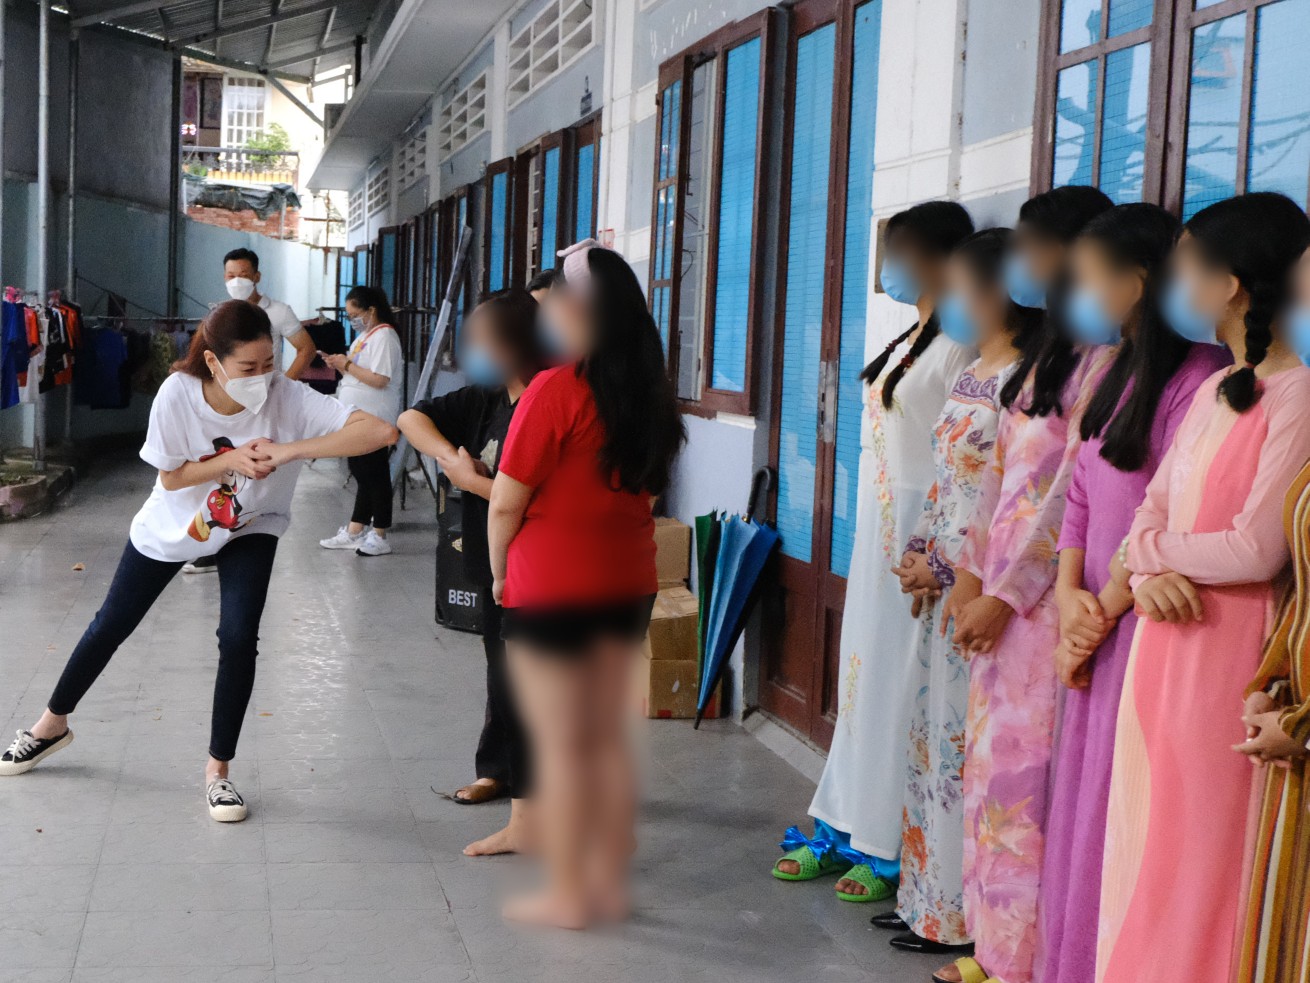 Hoa hậu Khánh Vân cùng ngôi nhà OBV mừng ngày Nhà giáo Việt Nam 20/11 - Ảnh 4